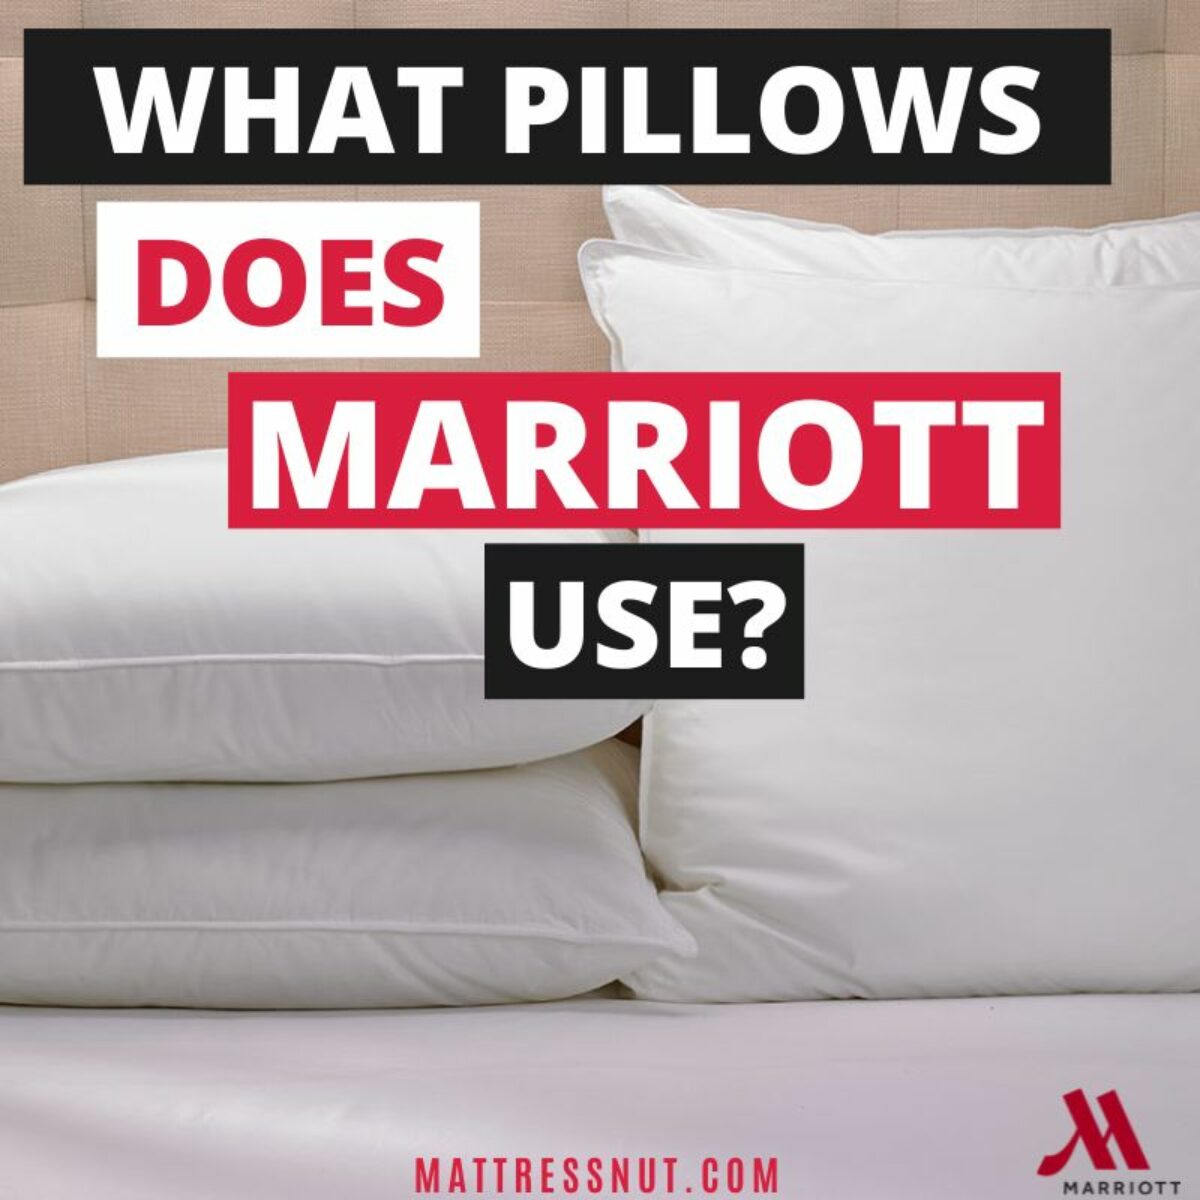 Buy Luxury Hotel Bedding from Marriott Hotels - Frameworks Bolster Pillow